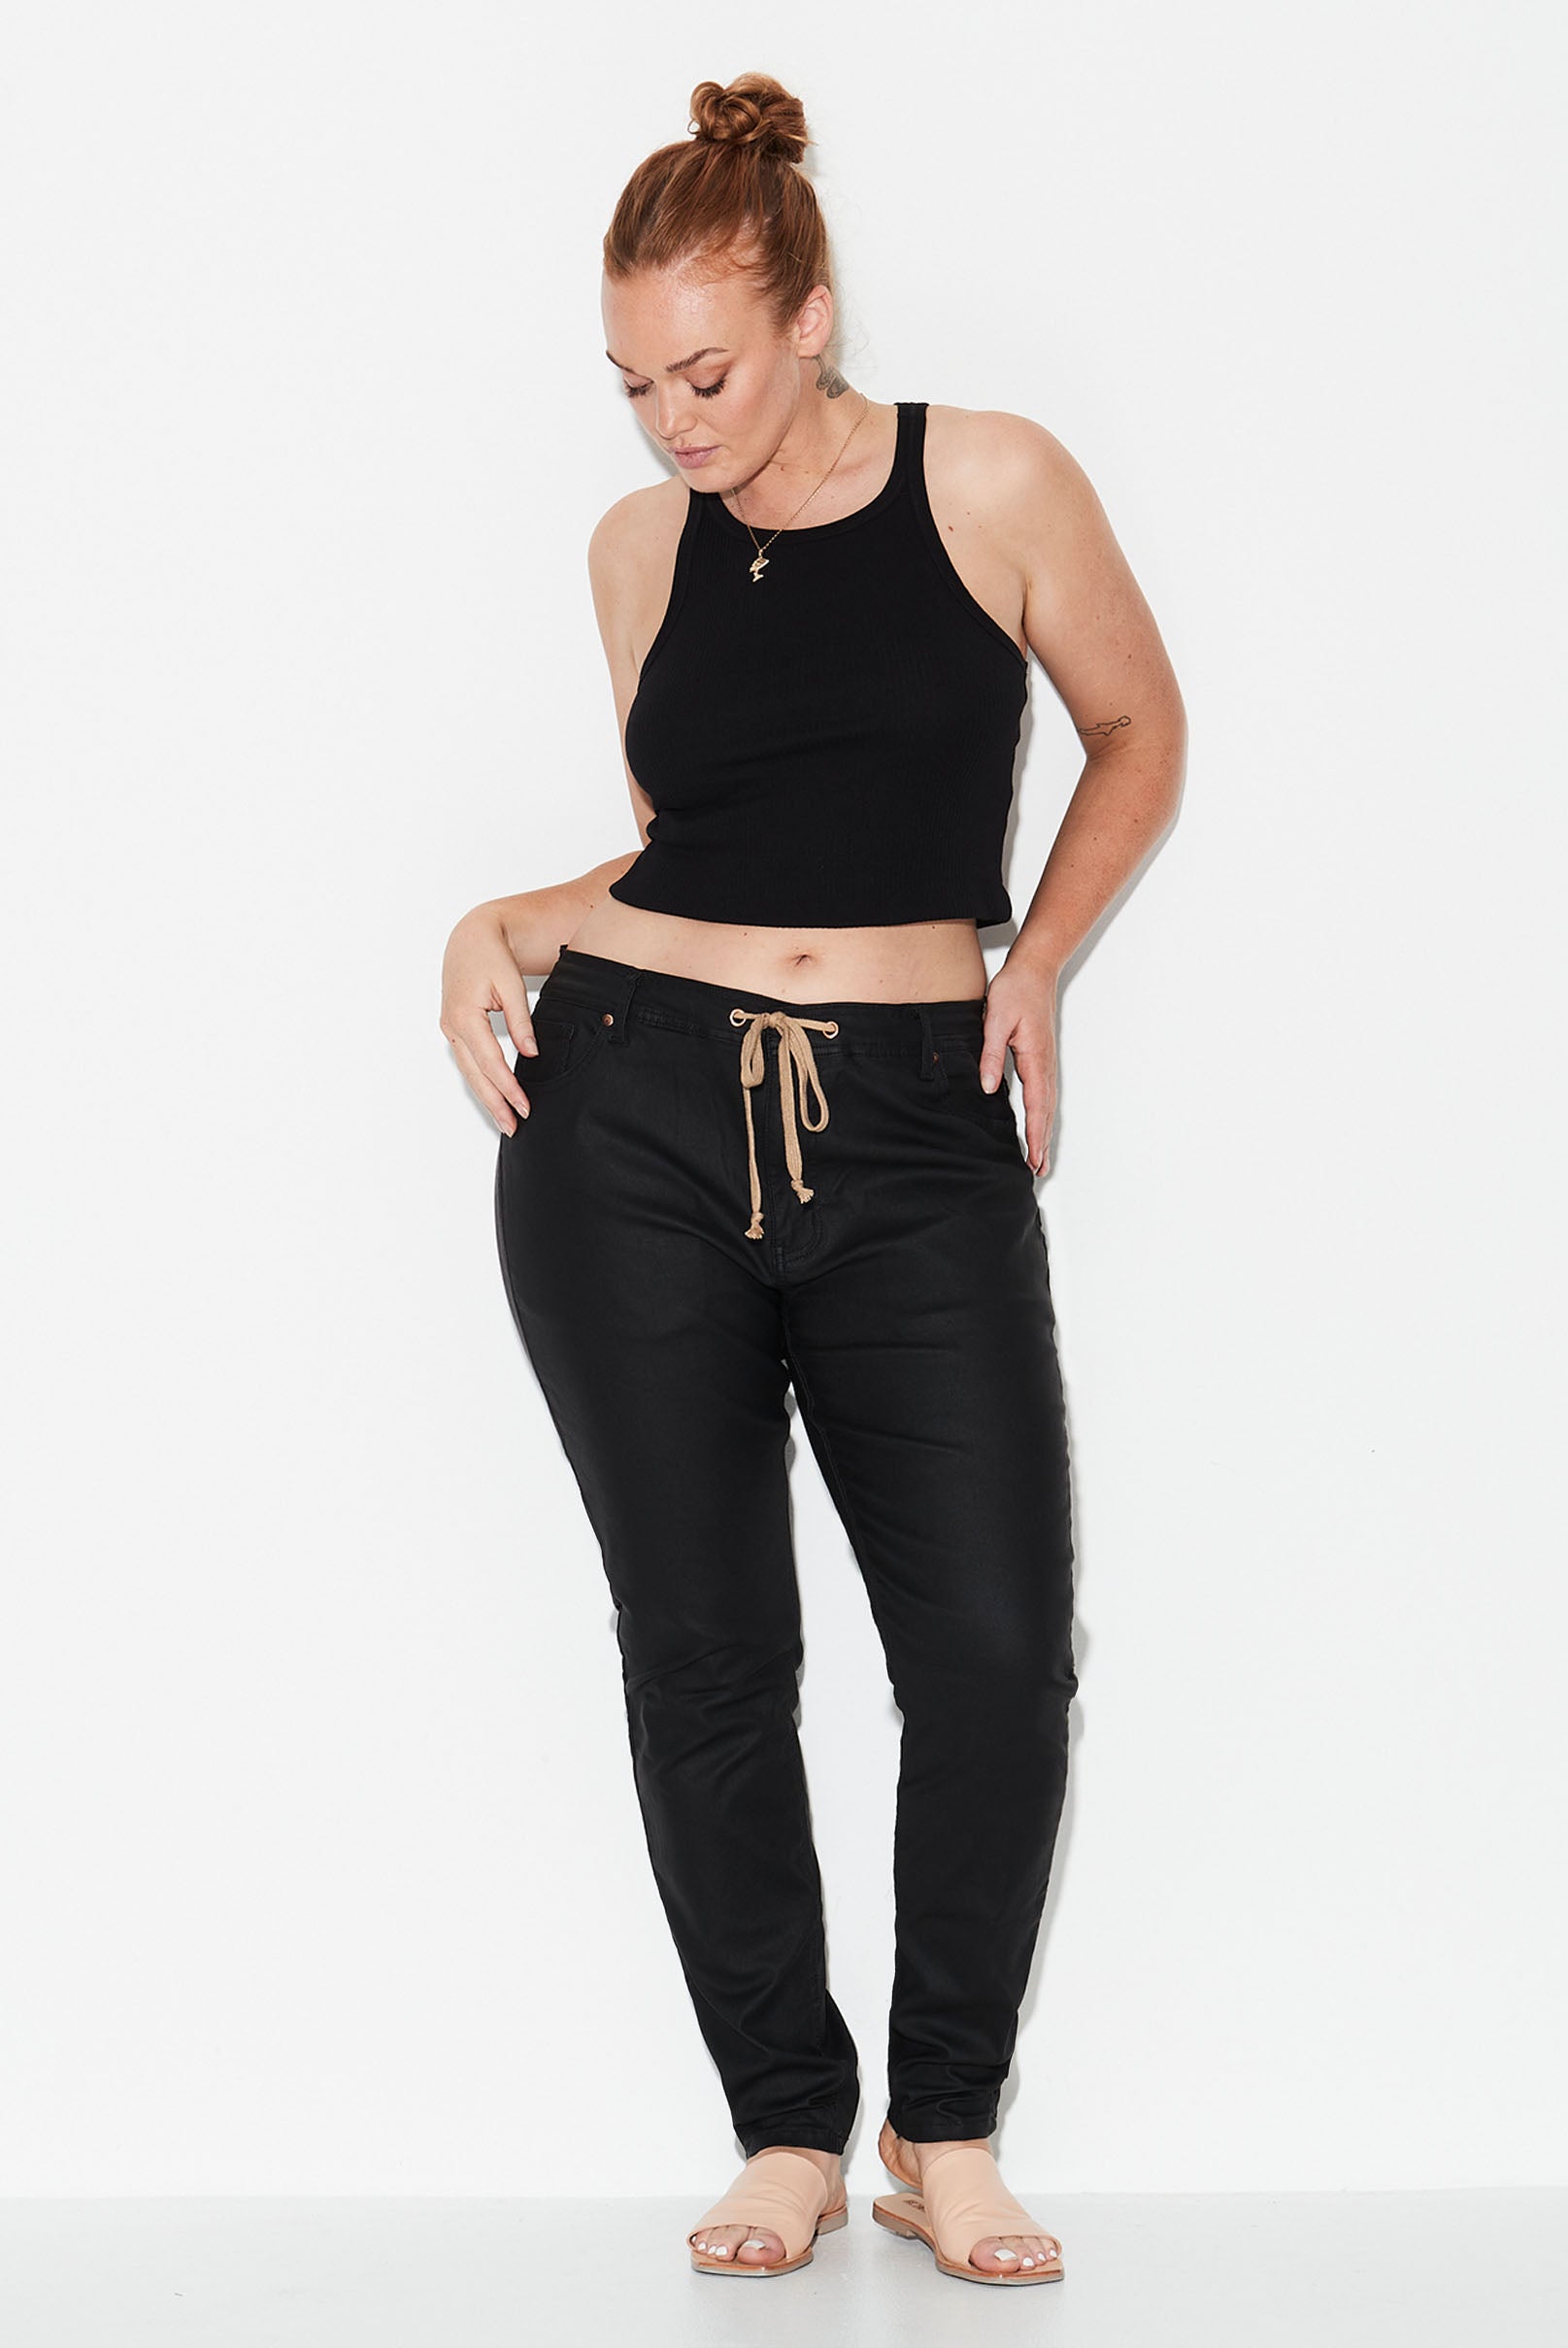 Model wears black leather look plus size jeans